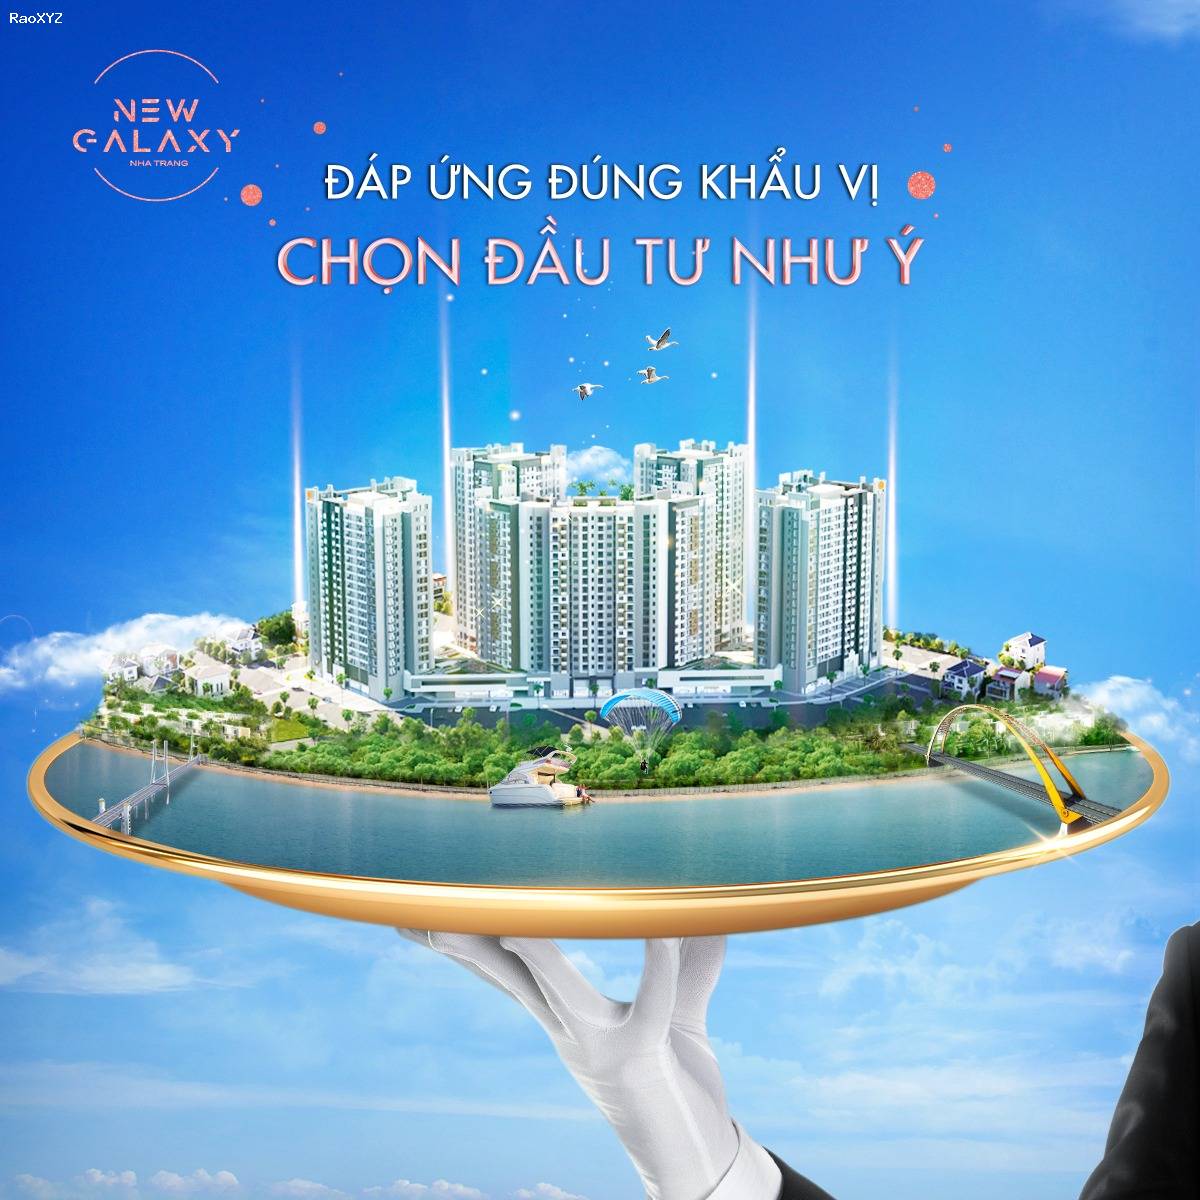 Cần bán căn studio 34m2, tầng 23, hướng biển Nha Trang, với giá 1.6 tỷ. LH: 0833528383 (Ms Minh)